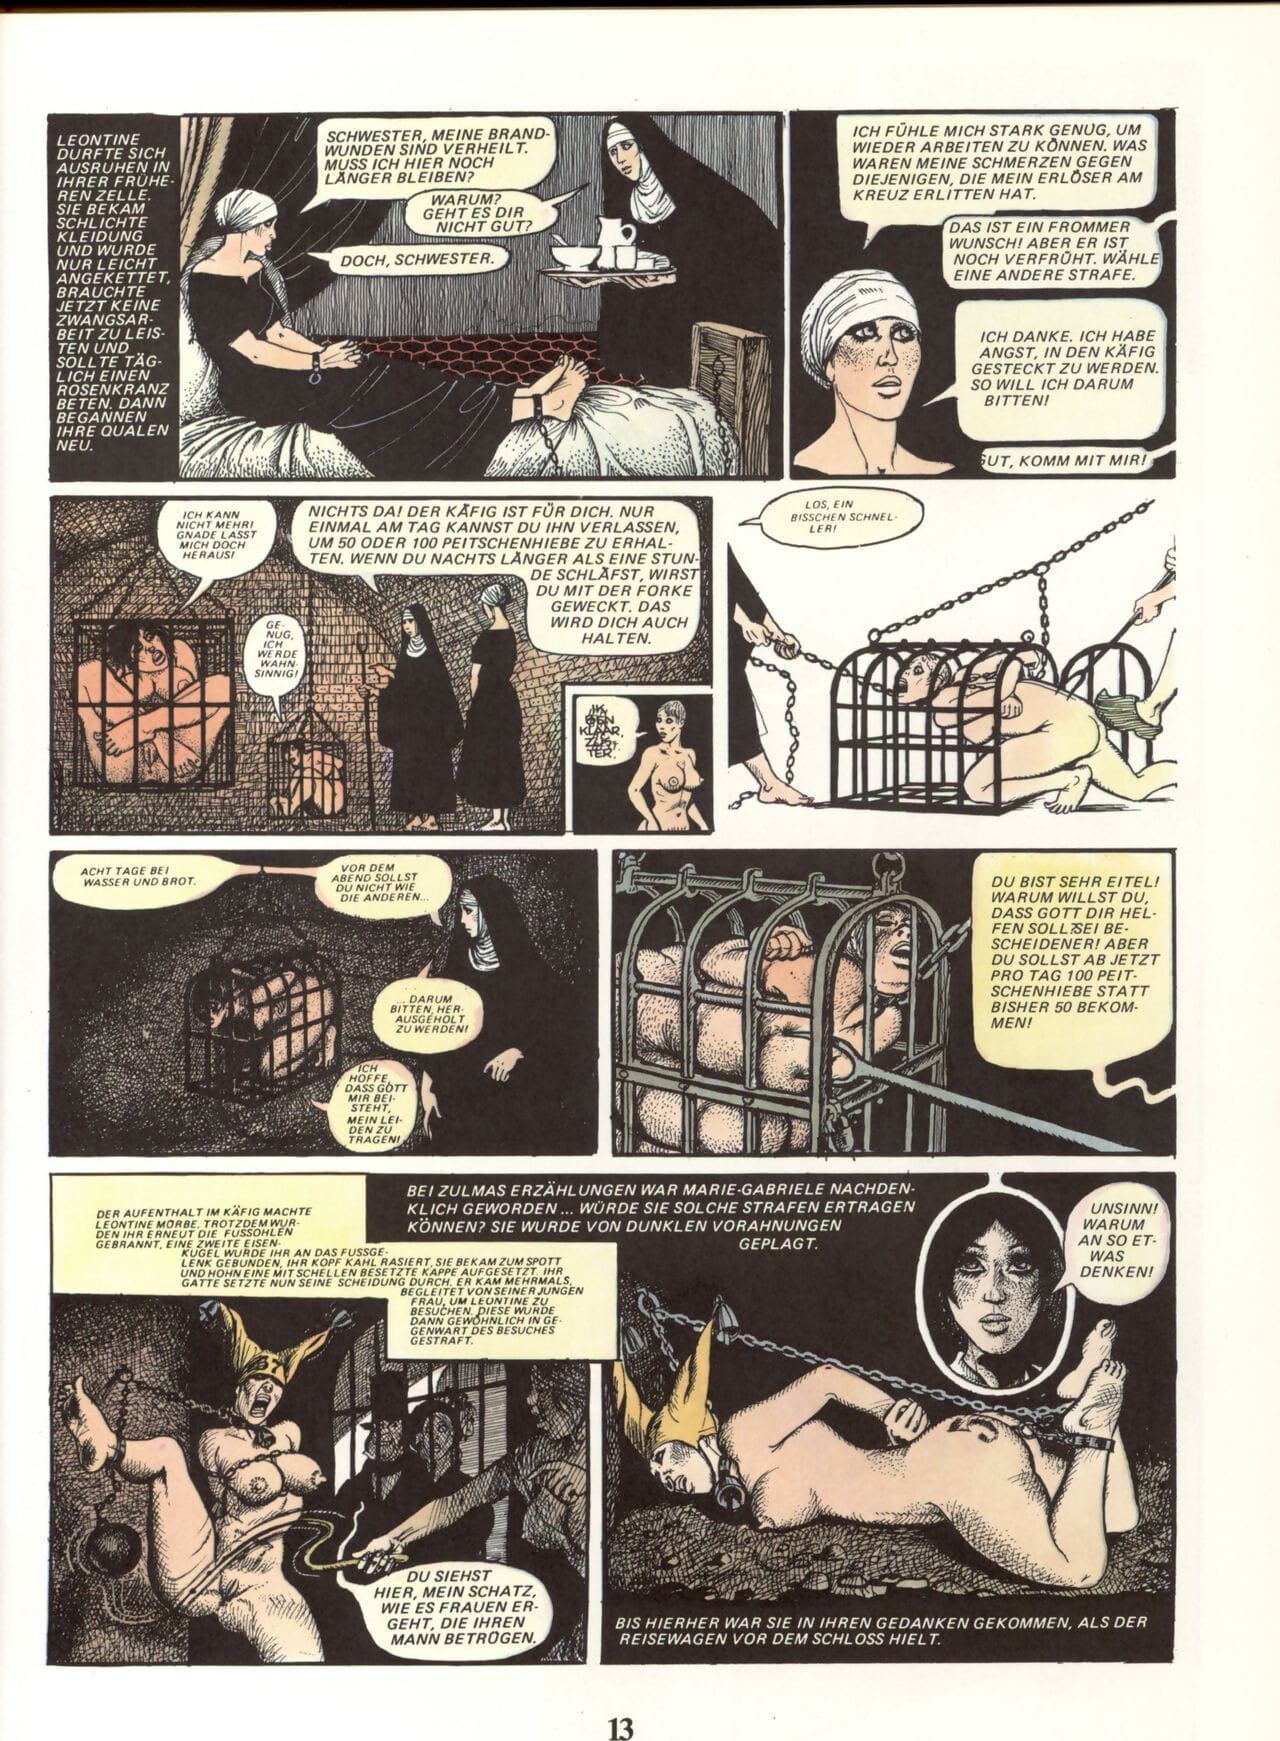 Marie Gabrielle De San eutropo #02 page 1